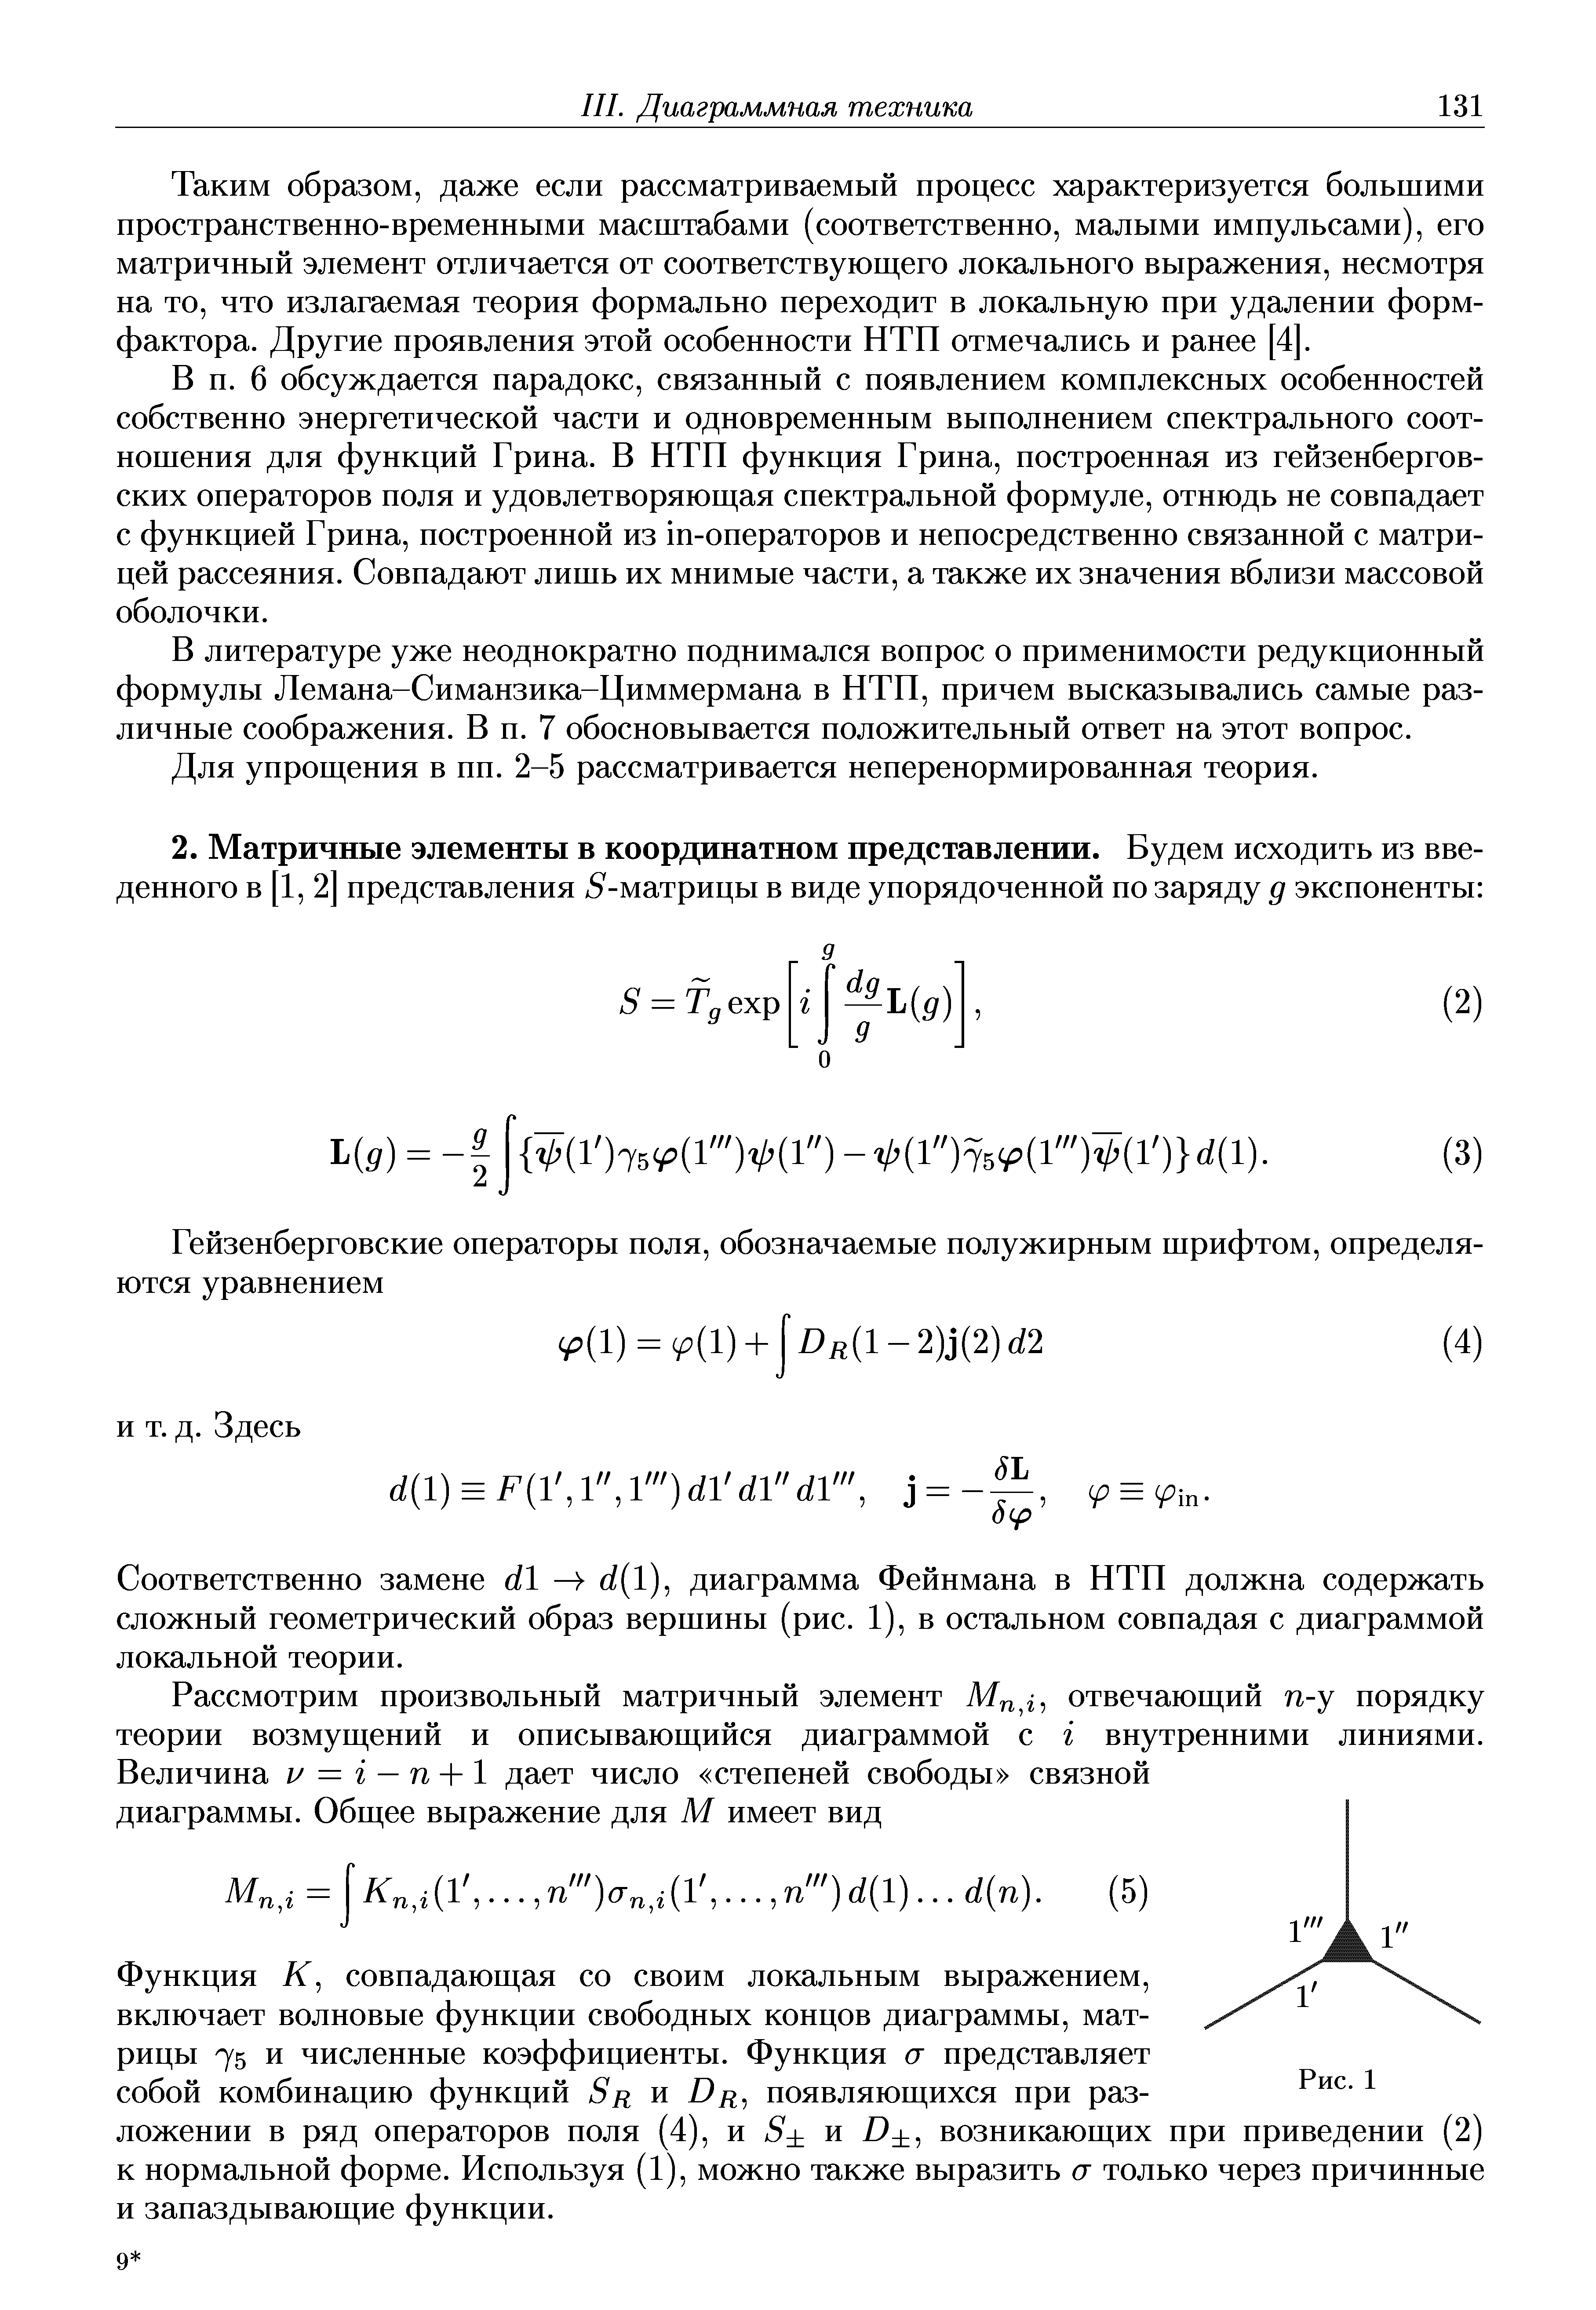 Соответственно замене б/1 —) б/(1), диаграмма Фейнмана в НТП должна содержать сложный геометрический образ вершины (рис. 1), в остальном совпадая с диаграммой локальной теории.
